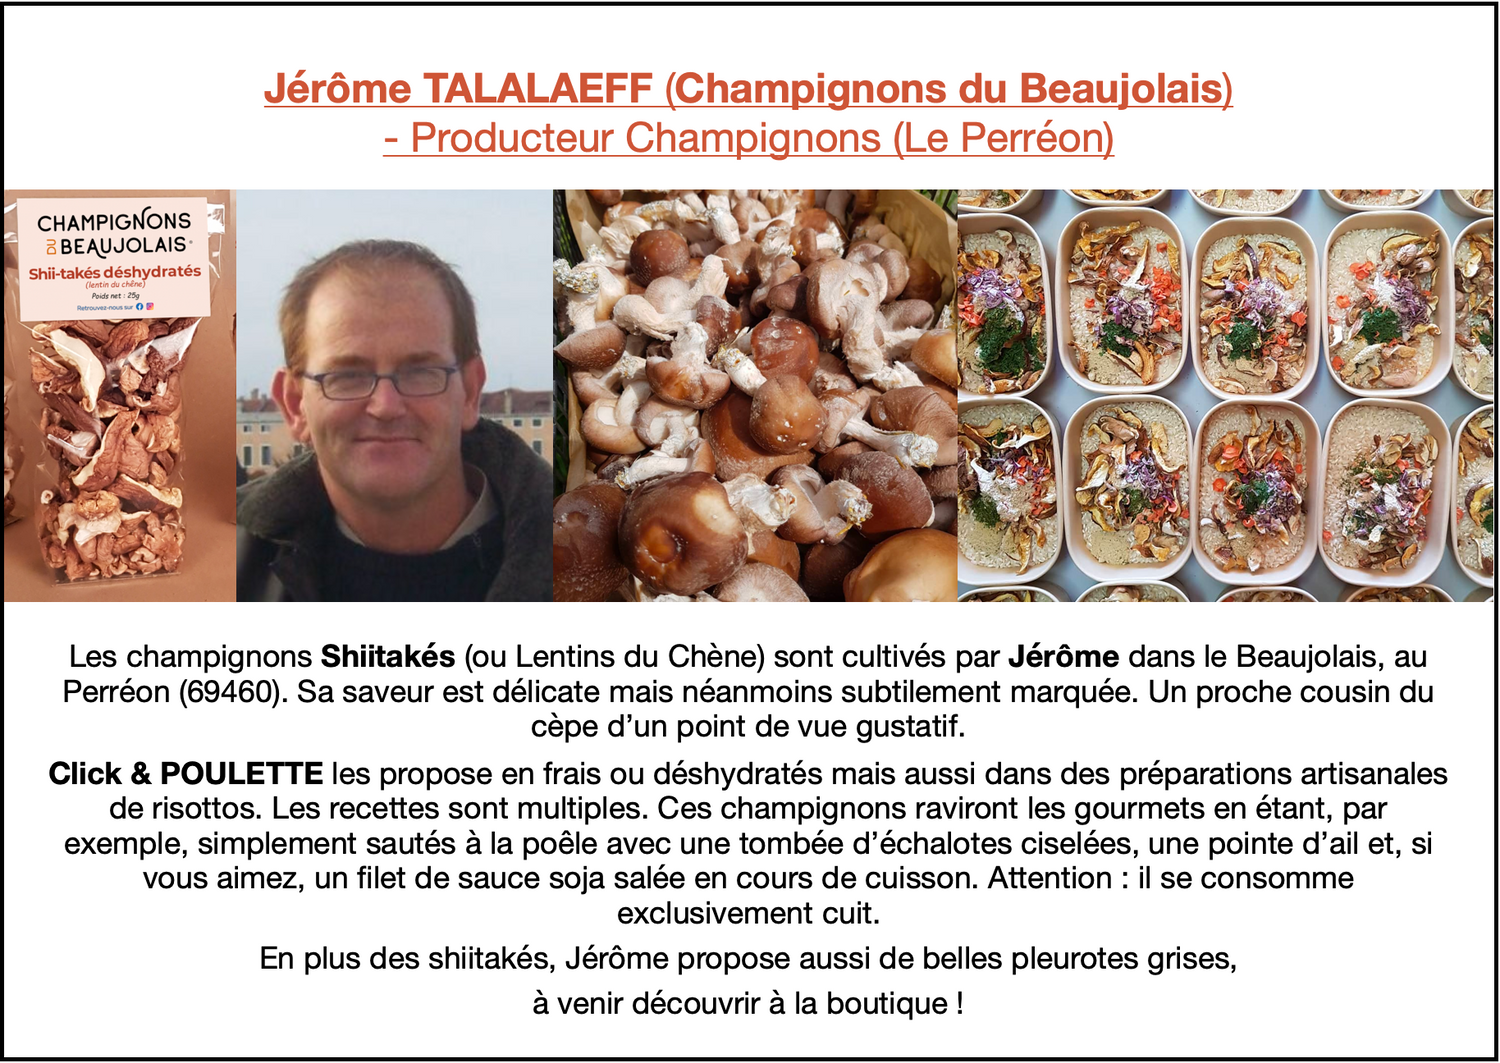 Jérôme TALALAEFF (Champignons du Beaujolais) - Producteur Champignons (Le Perréon). Click & POULETTE propose ses shiitakés en frais ou déshydratés mais aussi dans des préparations artisanales de risottos. En plus des shii-takés, Jérôme propose aussi de belles pleurotes grises.